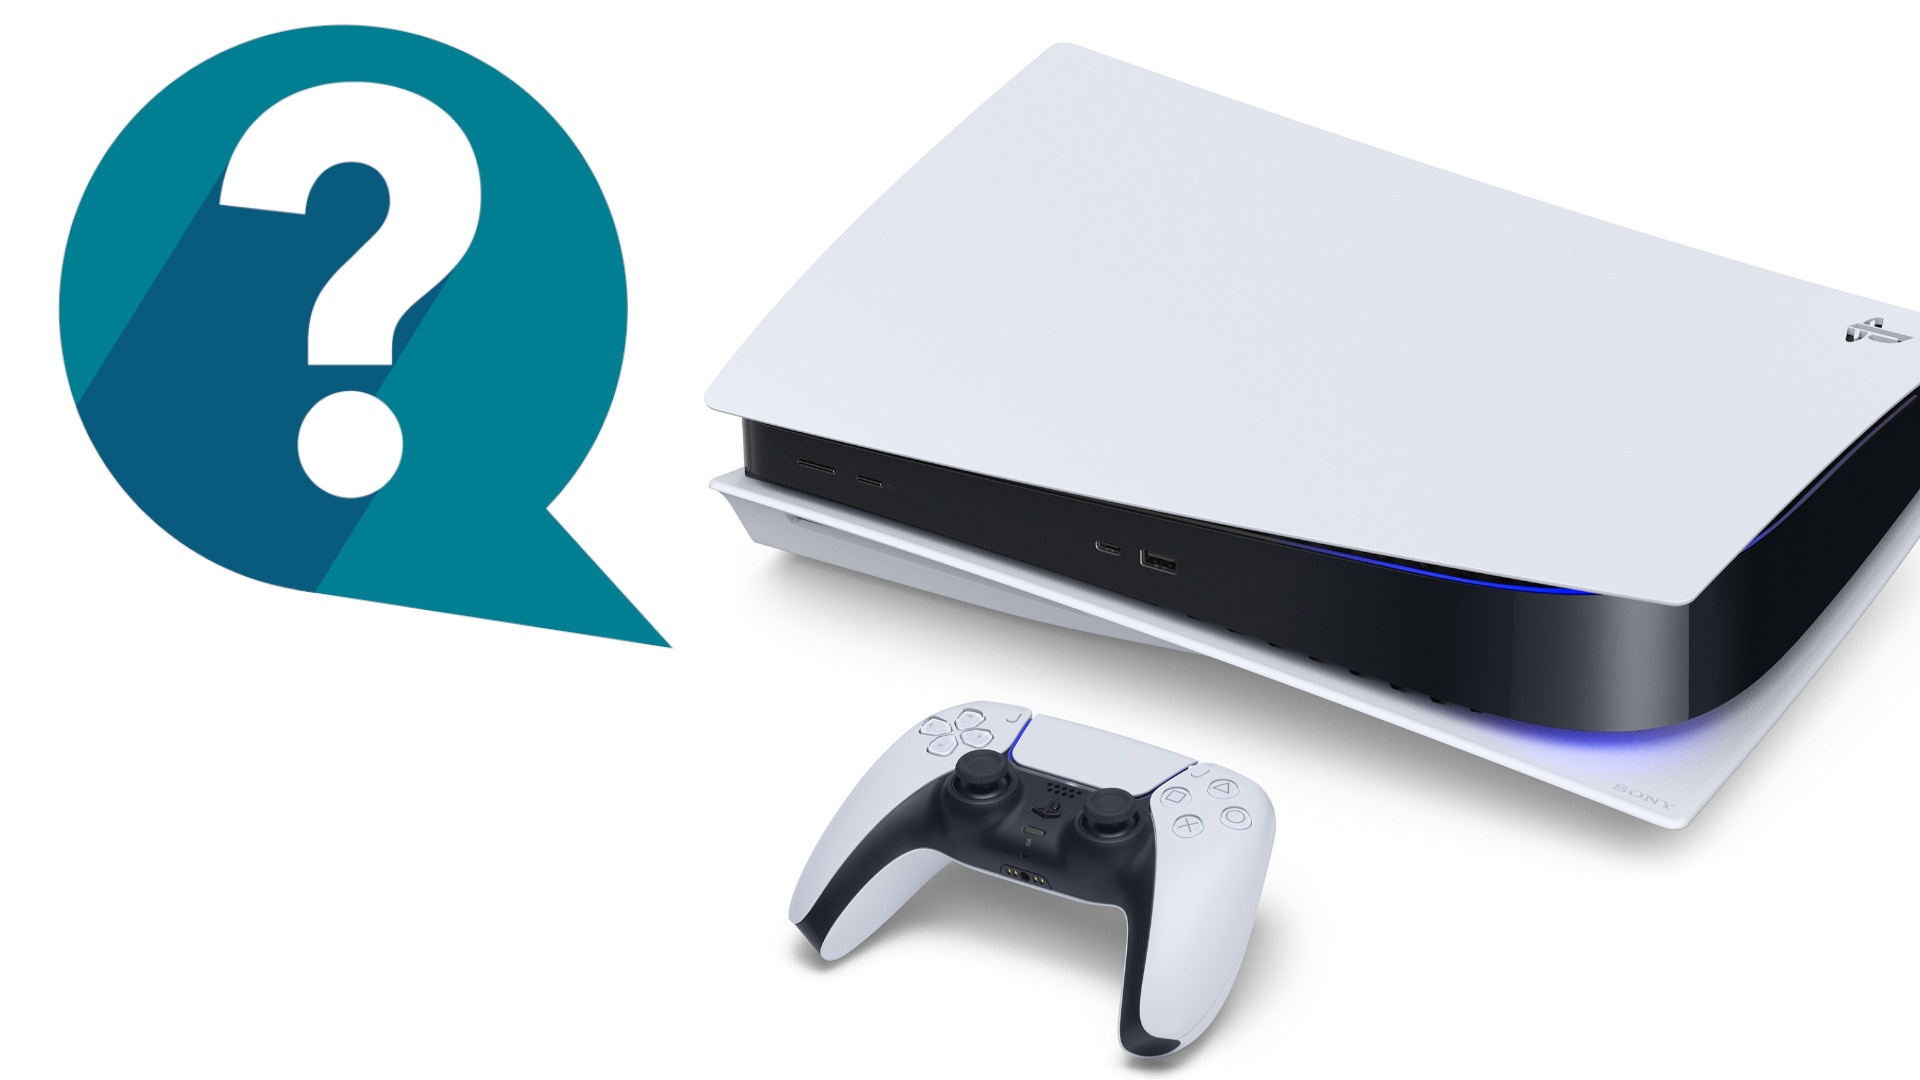 PS5 Pro: tudo o que sabemos sobre a nova consola - 4gnews